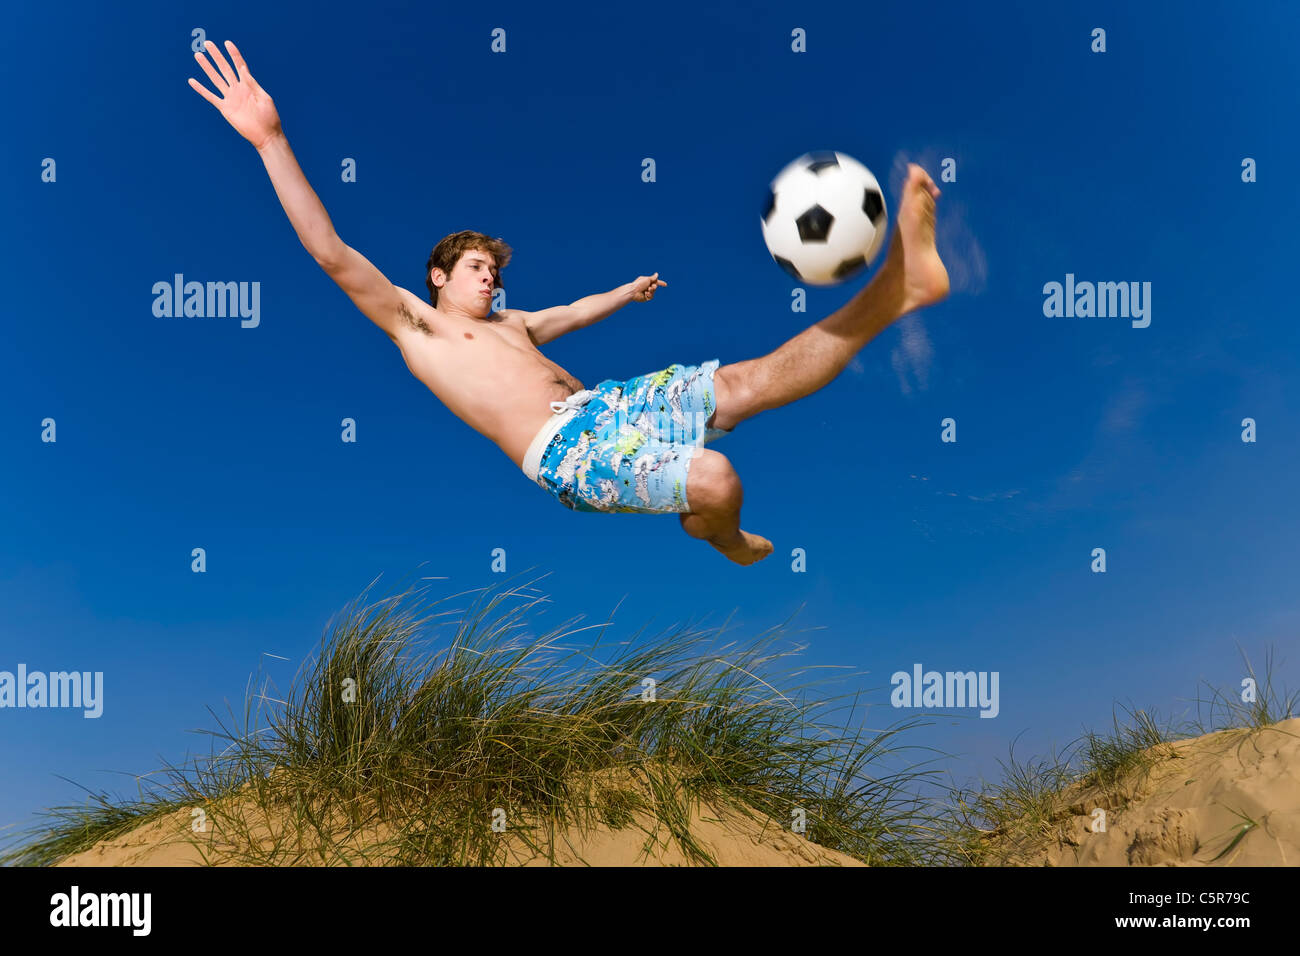 Un joueur de football de plage se connecte à l'overhead kick. Banque D'Images